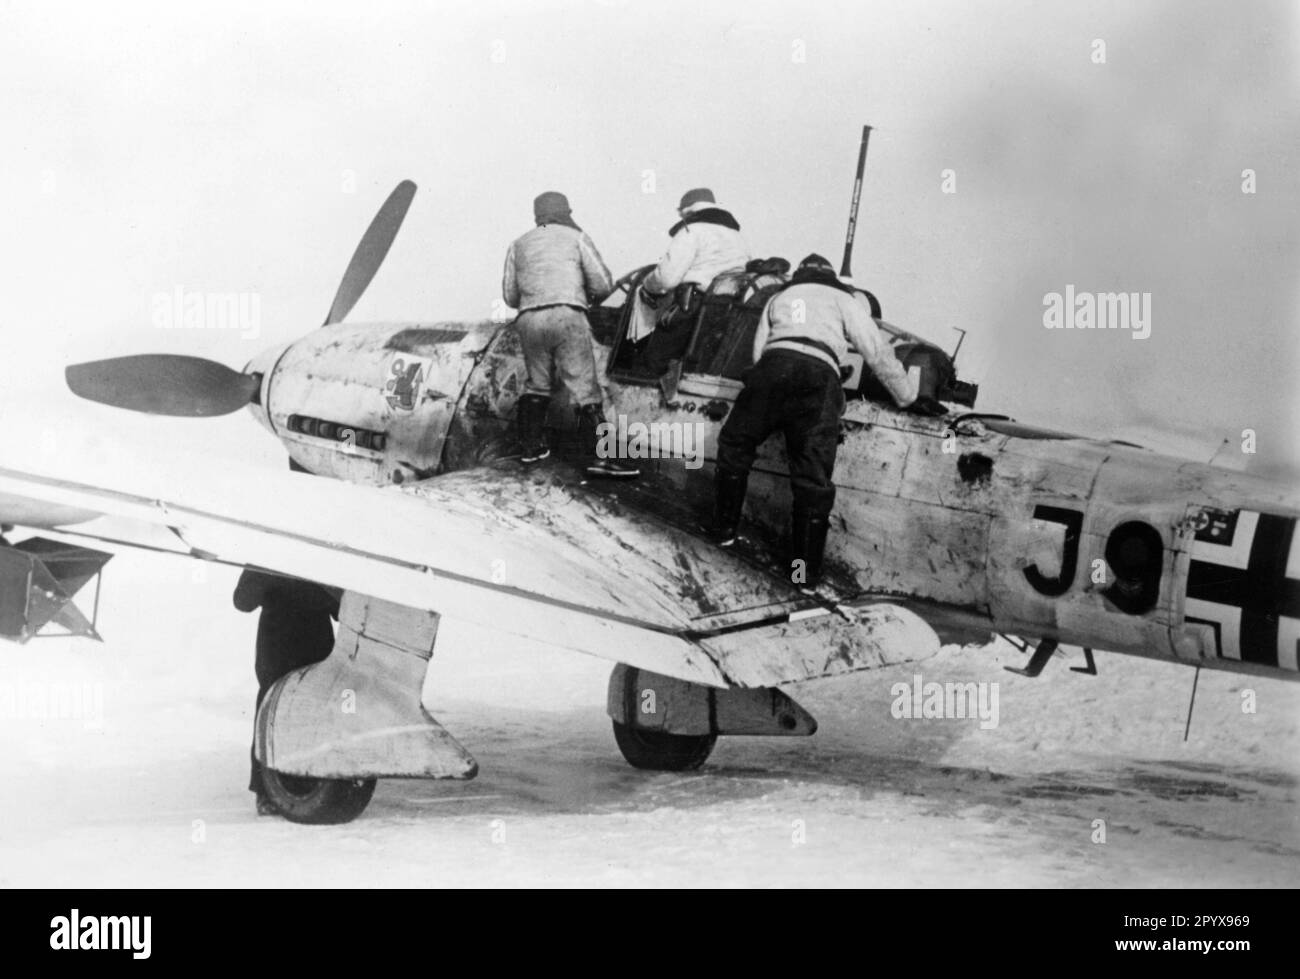 'Junkers Ju 87 ''Stuka'' auf einem Flugplatz nahe Gostino im nördlichen Teil der Ostfront. Auf der Motorhaube des Flugzeugs befindet sich das Emblem des 7./Stukageschwader 1. Foto: Reimers. [Maschinelle Übersetzung]' Stockfoto